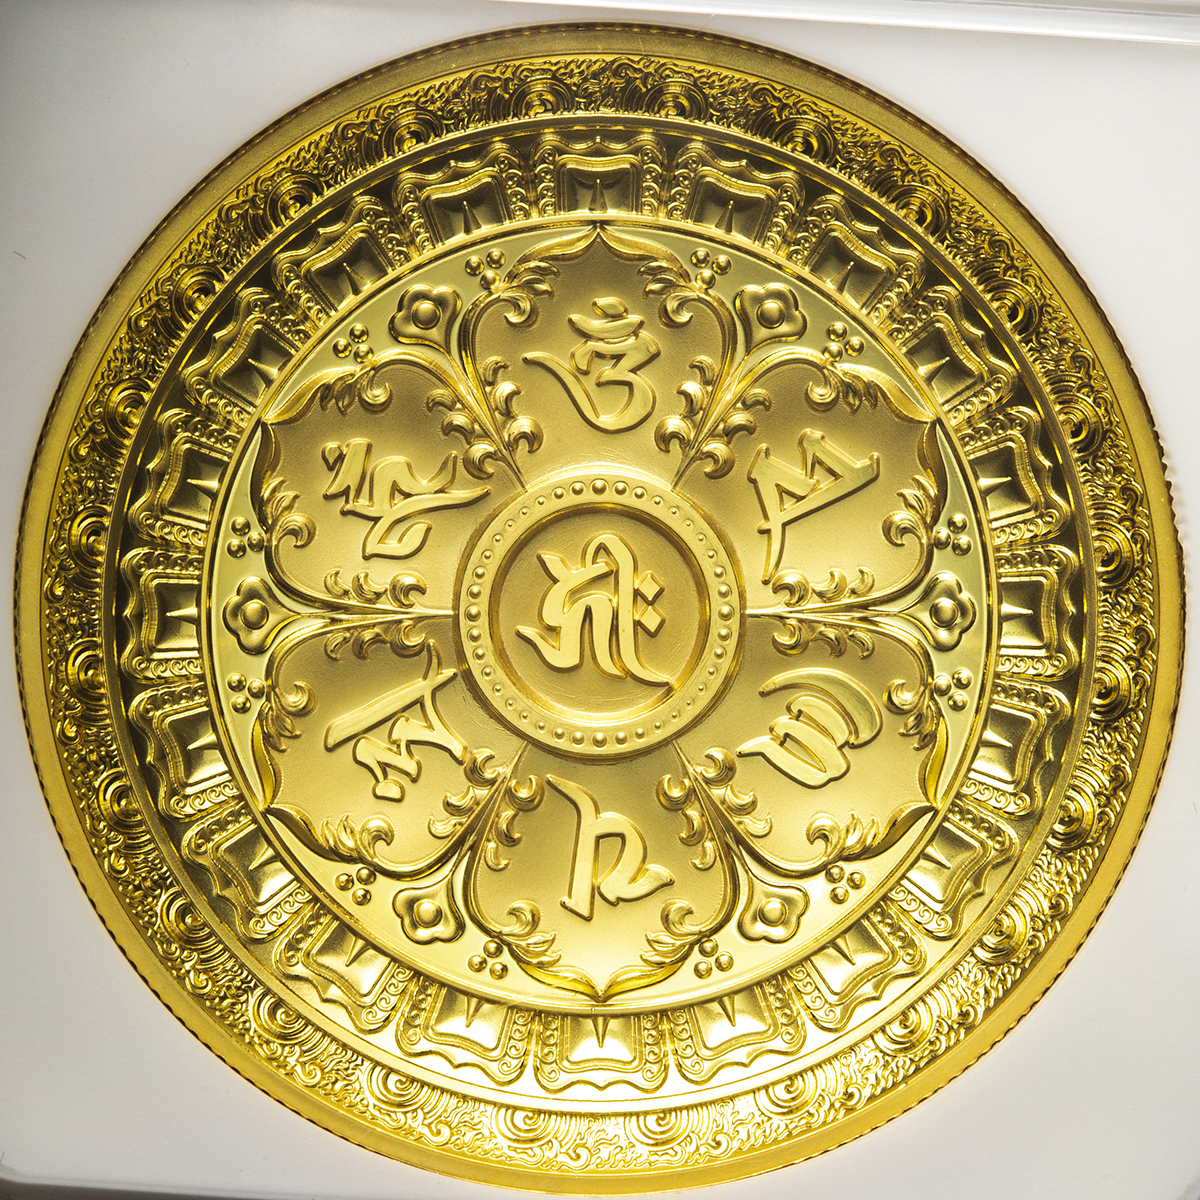 限时竞拍,中華人民共和国People's Republic of China Gilt Medal ND